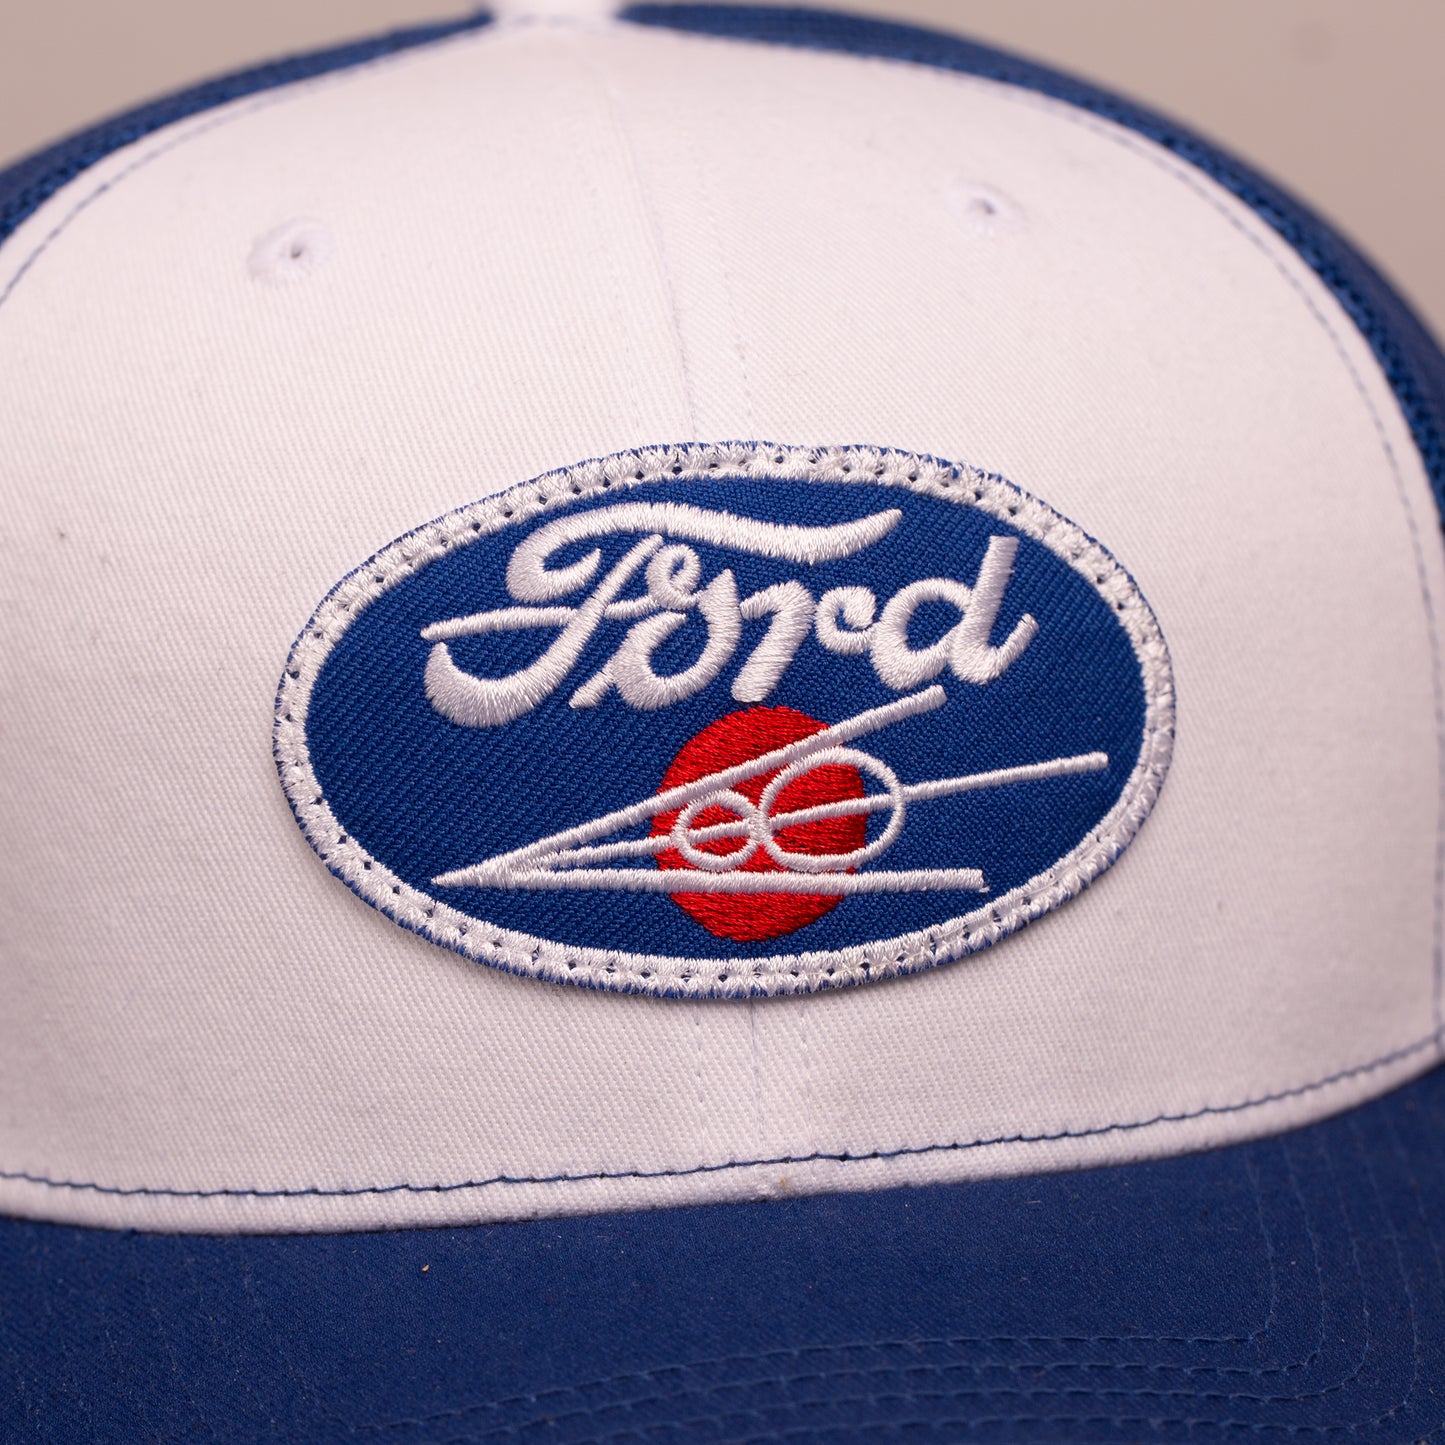 Ford Flathead